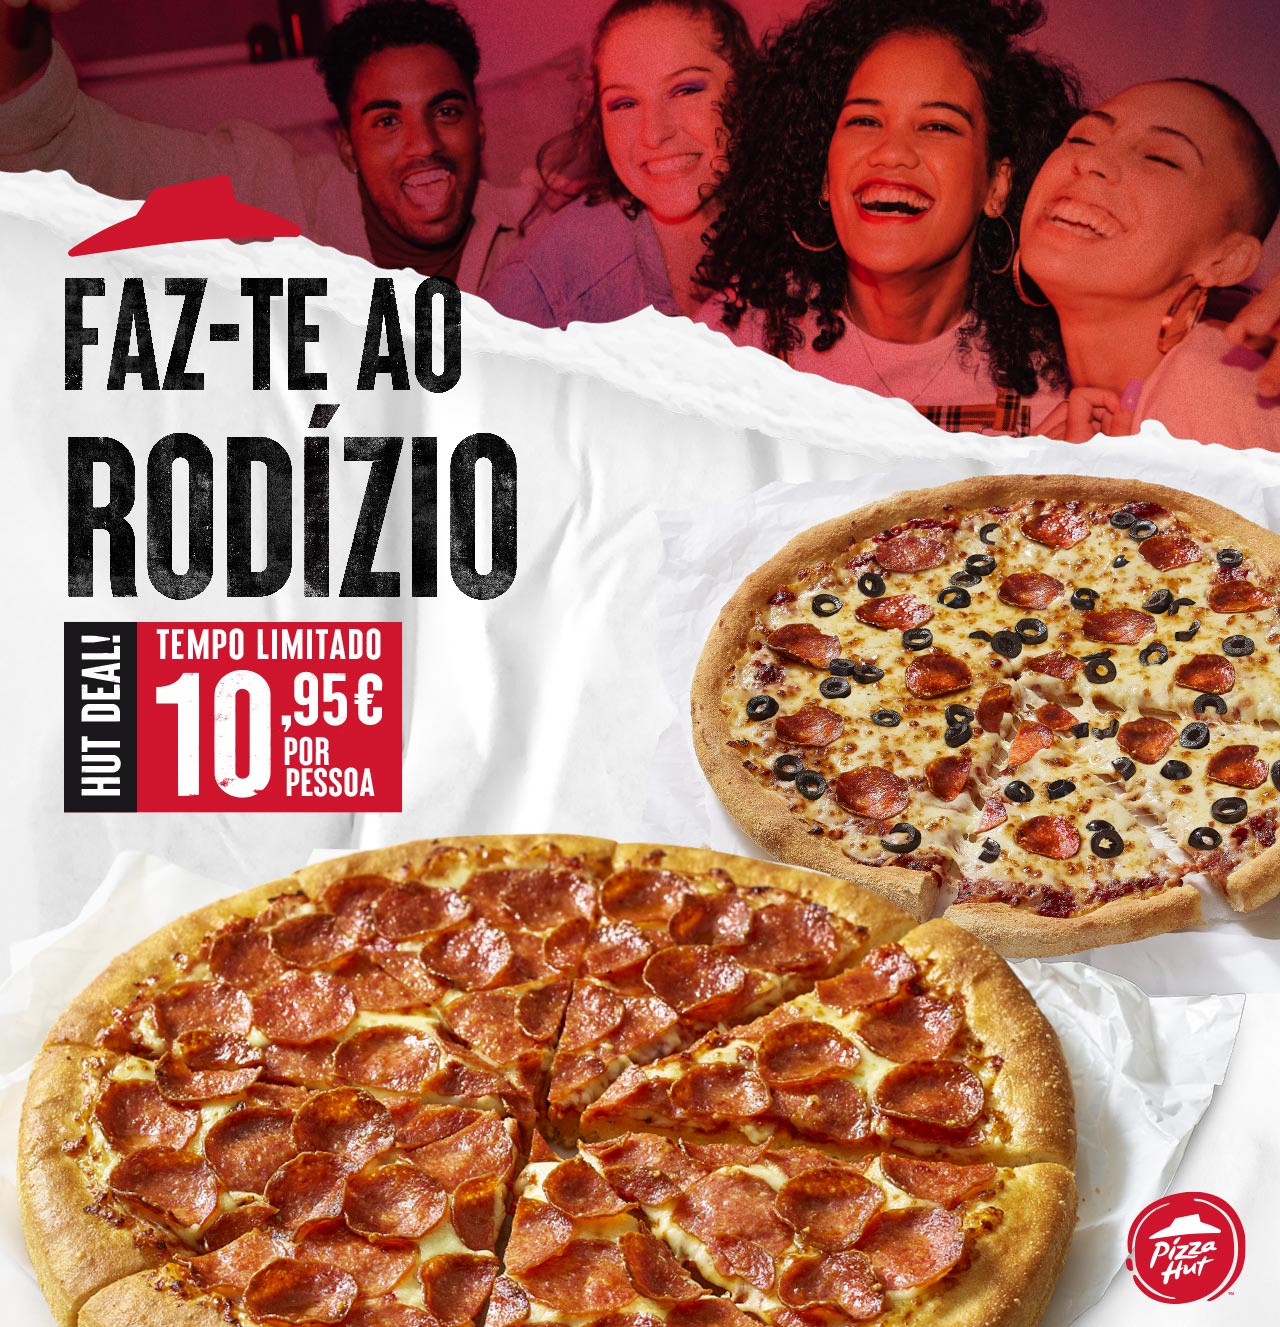 RODIZIO. Pizza Hut Portugal